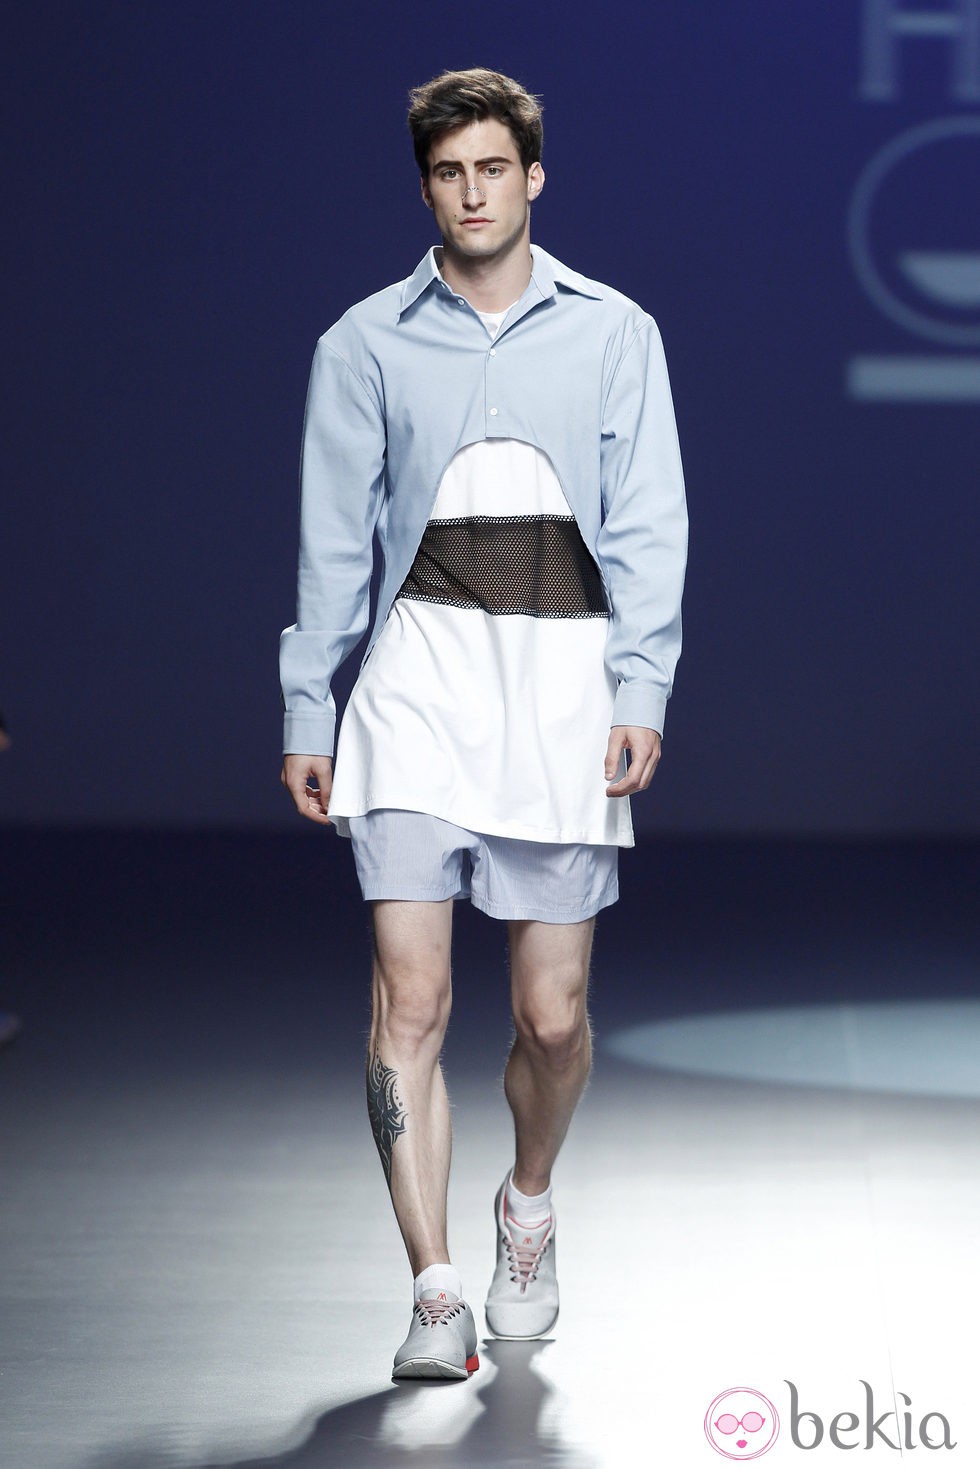 Look sport de la colección primavera/verano 2014 de Heridadegato en el EGO Madrid Fashion Week